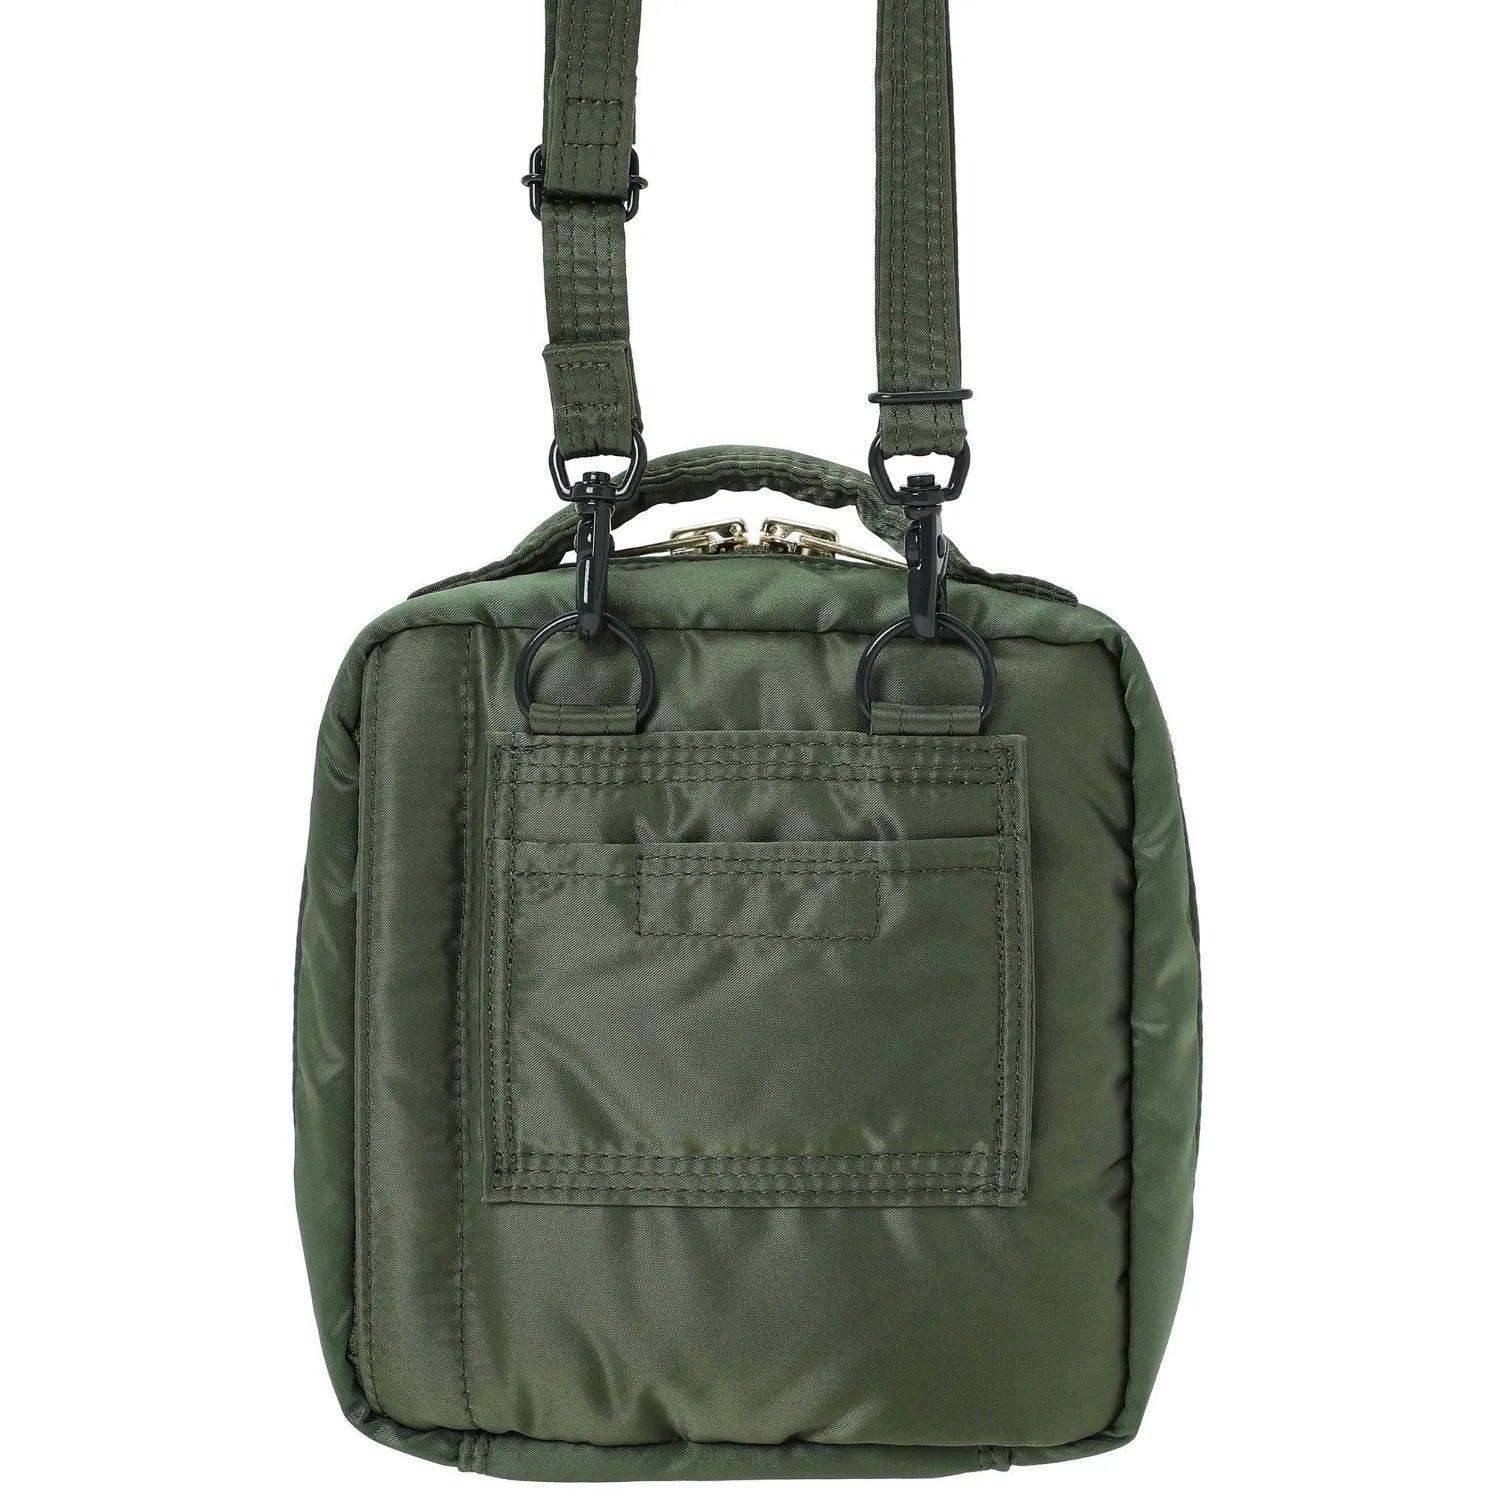 Porter-Yoshida & Co Tanker Shoulder Bag - Sage Green - One